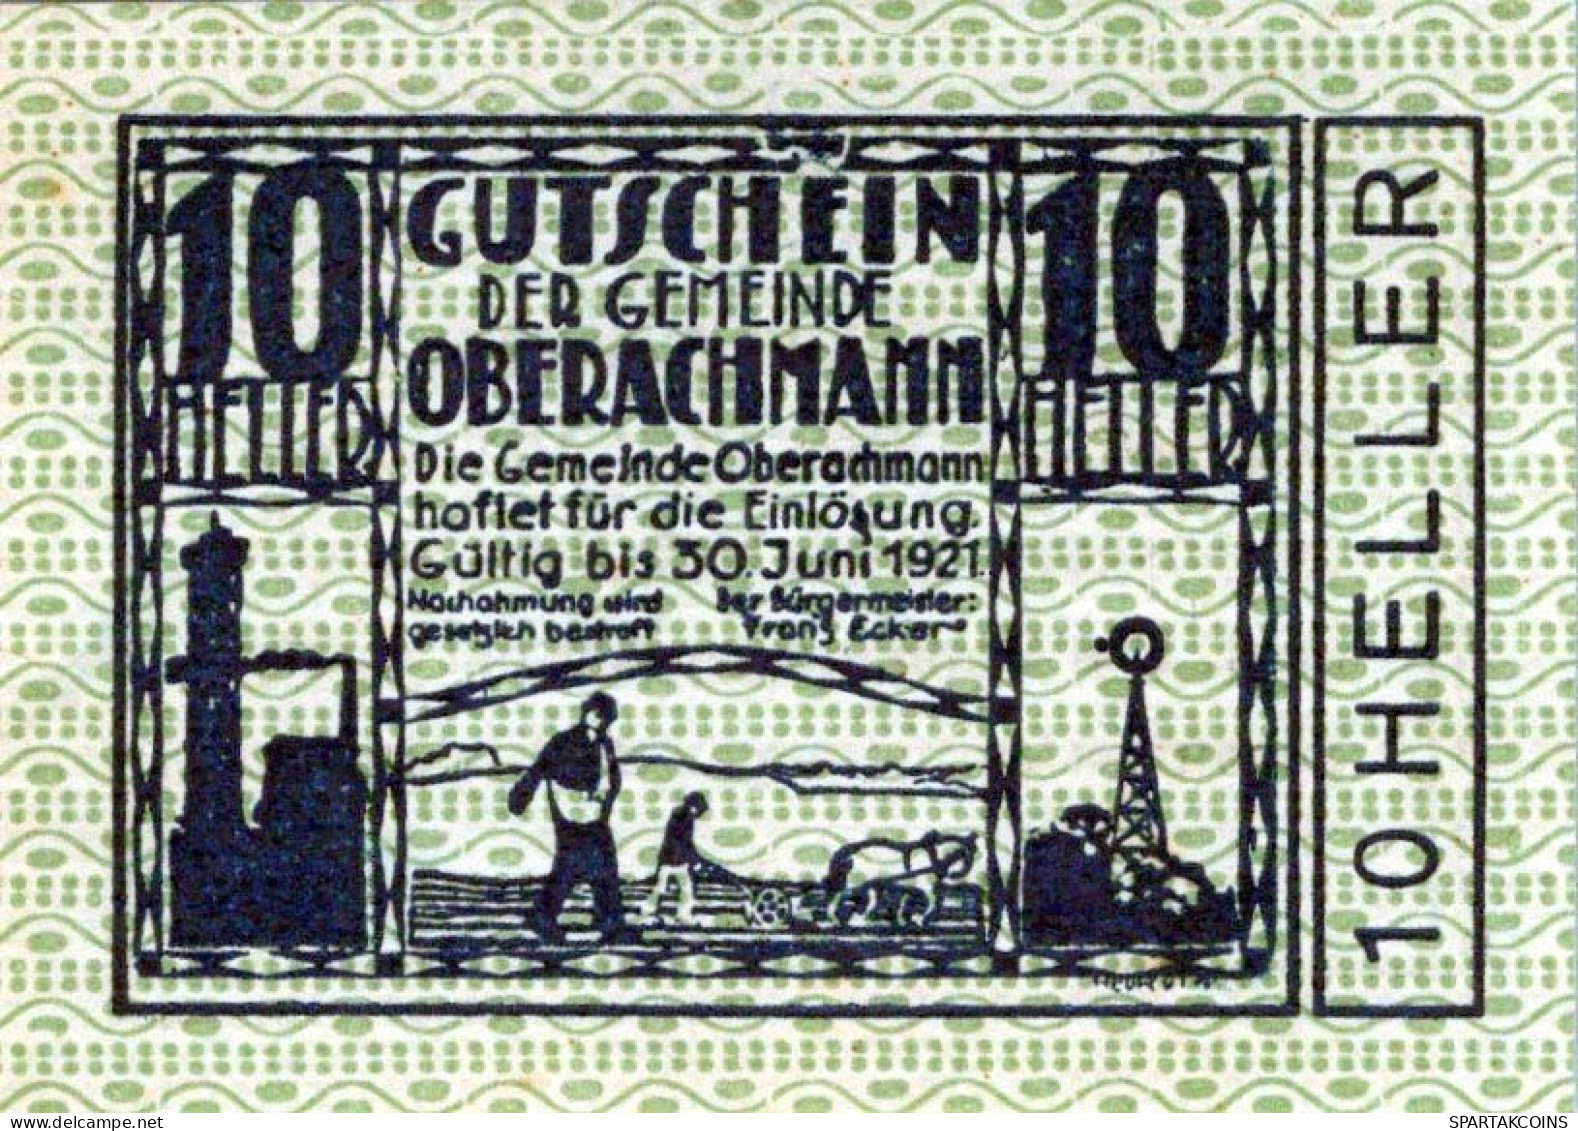 10 HELLER 1920 Stadt OBERACHMANN Oberösterreich Österreich Notgeld #PE477 - [11] Emissioni Locali